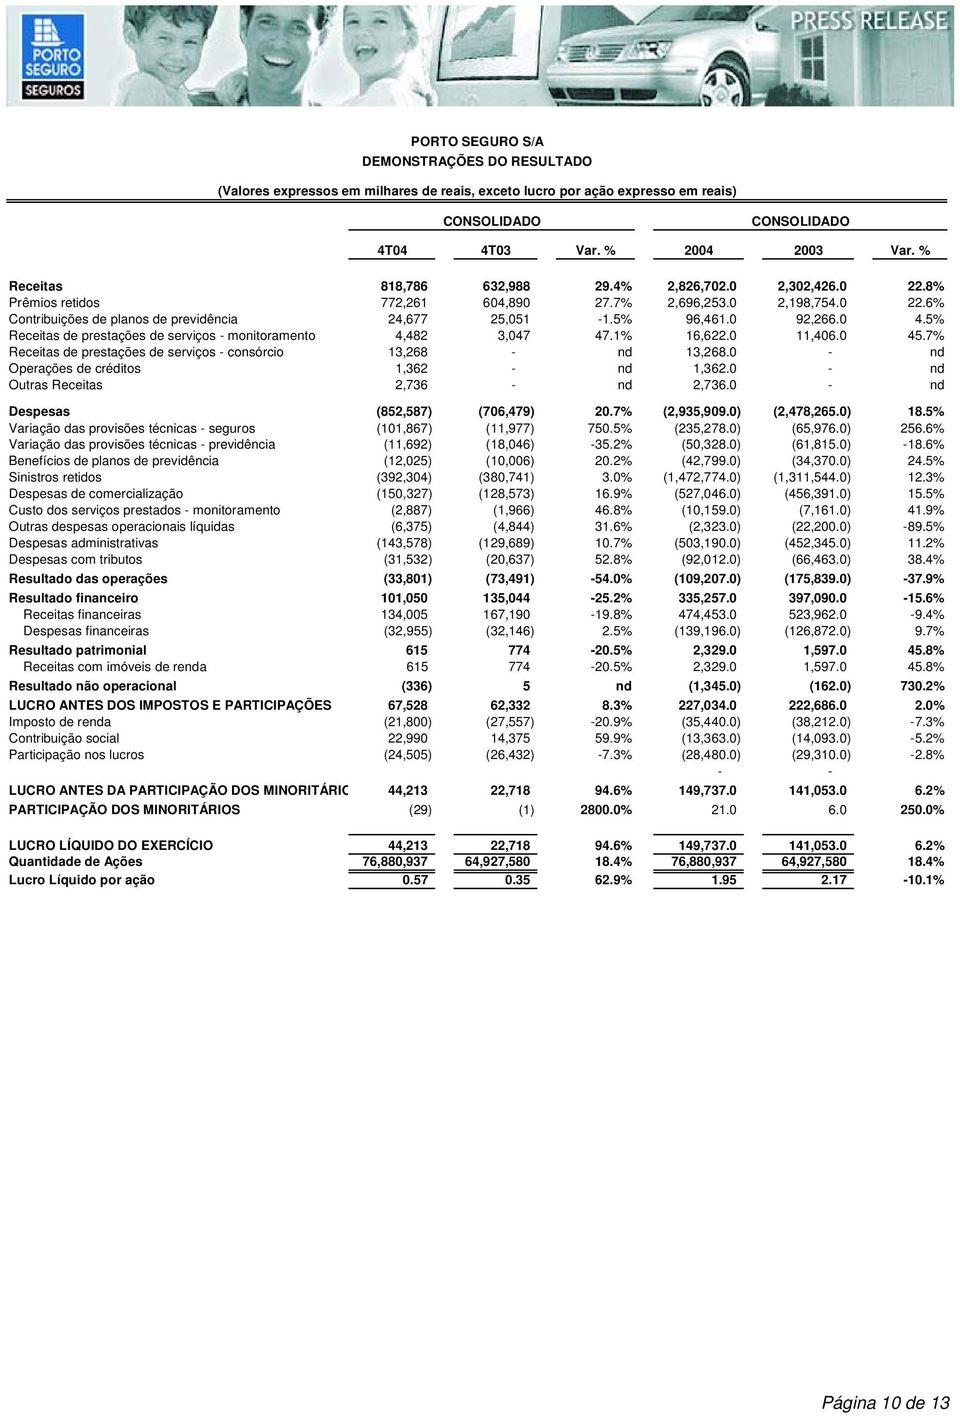 0 92,266.0 4.5% Receitas de prestações de serviços - monitoramento 4,482 3,047 47.1% 16,622.0 11,406.0 45.7% Receitas de prestações de serviços - consórcio 13,268 - nd 13,268.